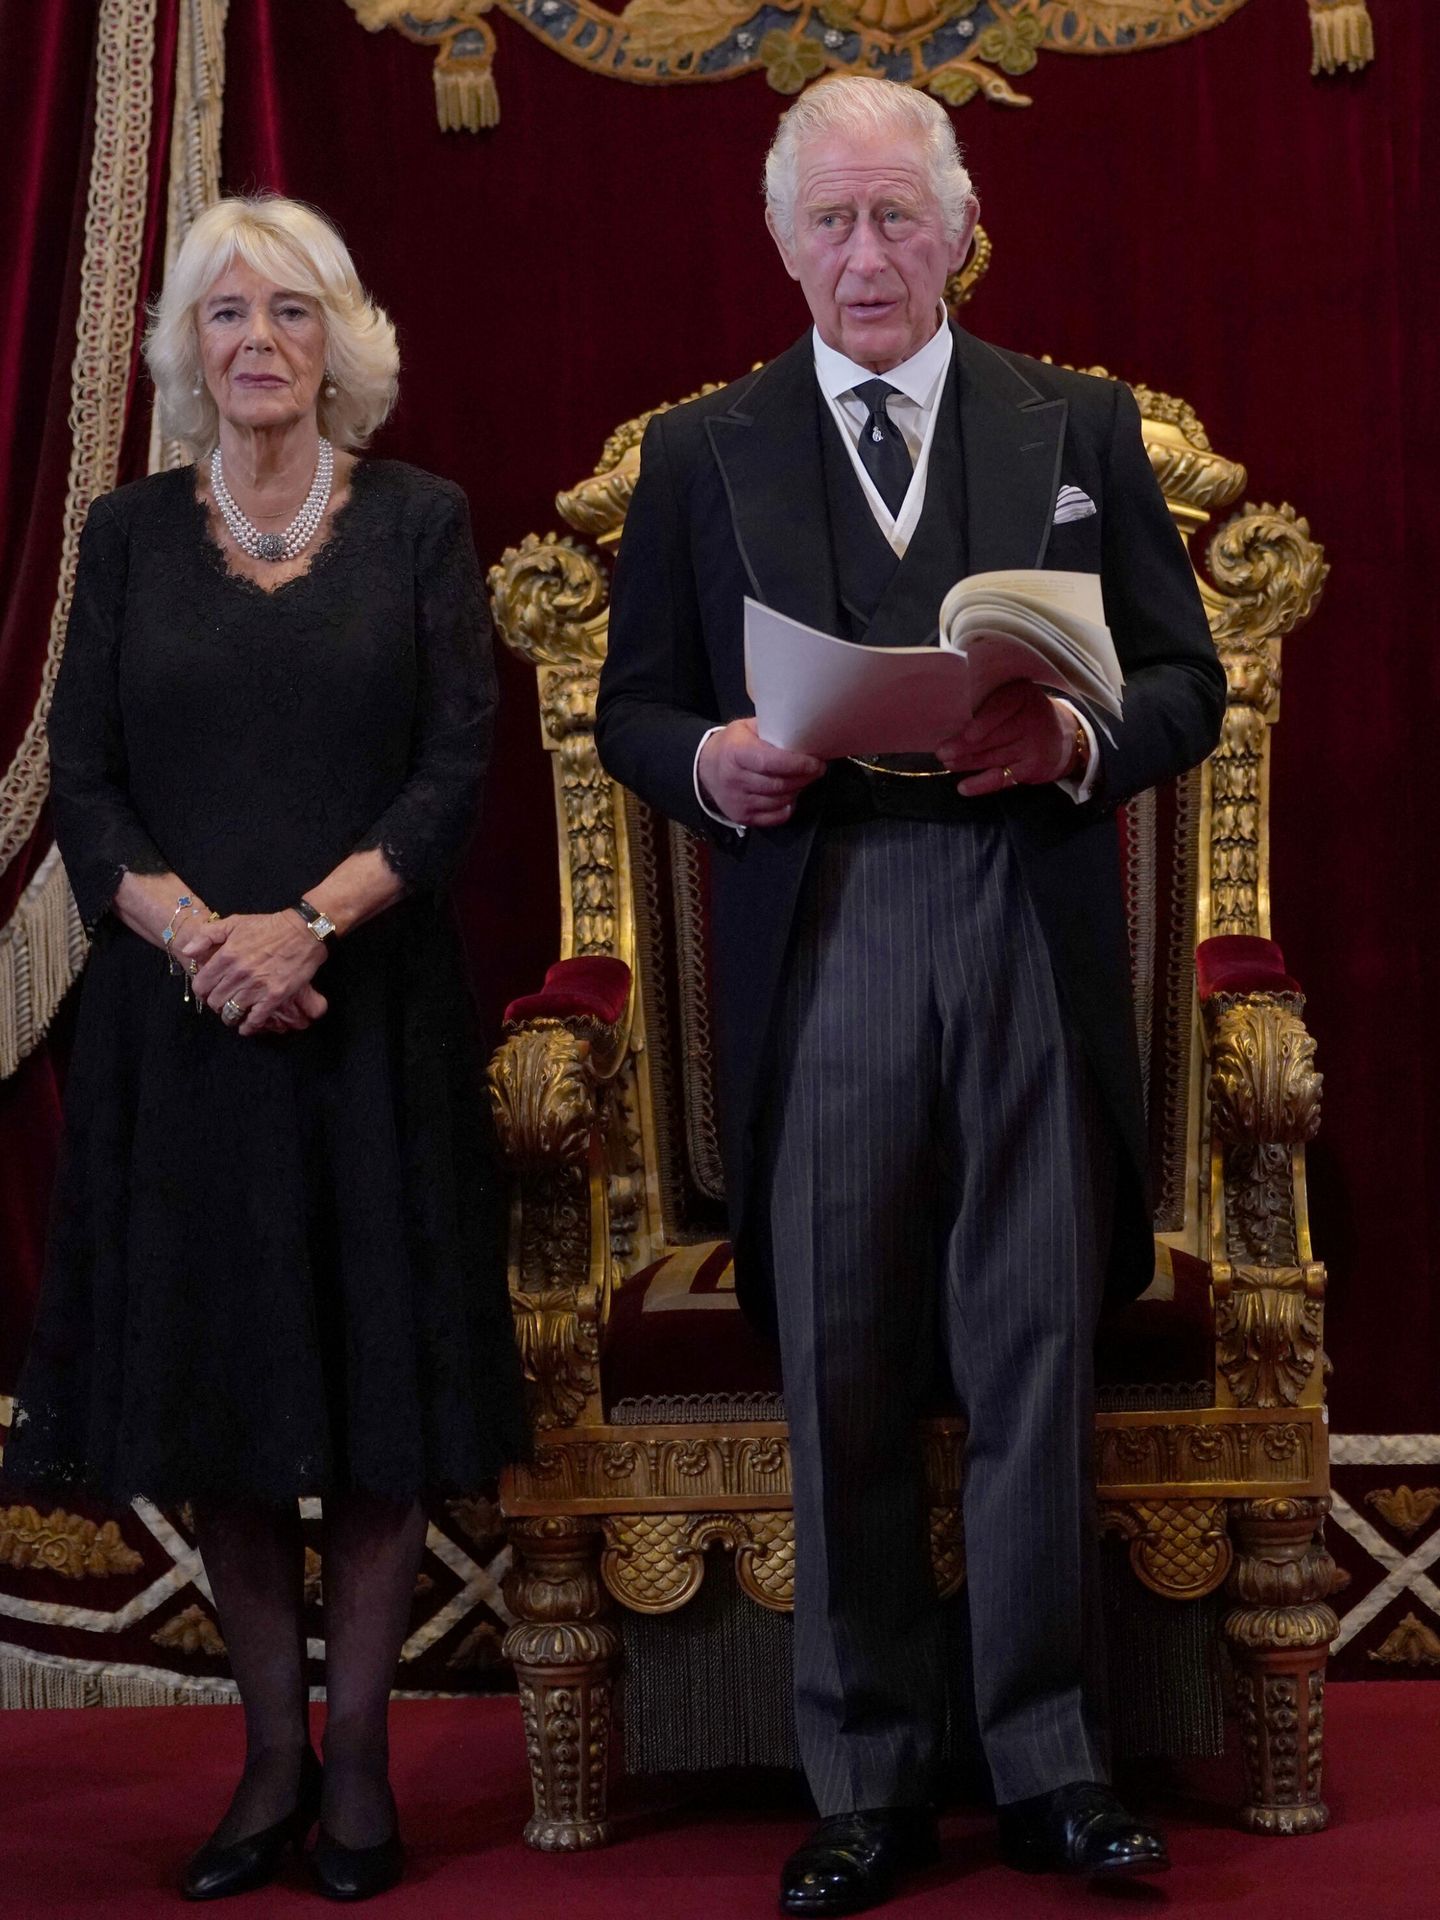 La reina Camila, junto al rey Carlos III durante su discurso. (Reuters/Pool/Victoria Jones)